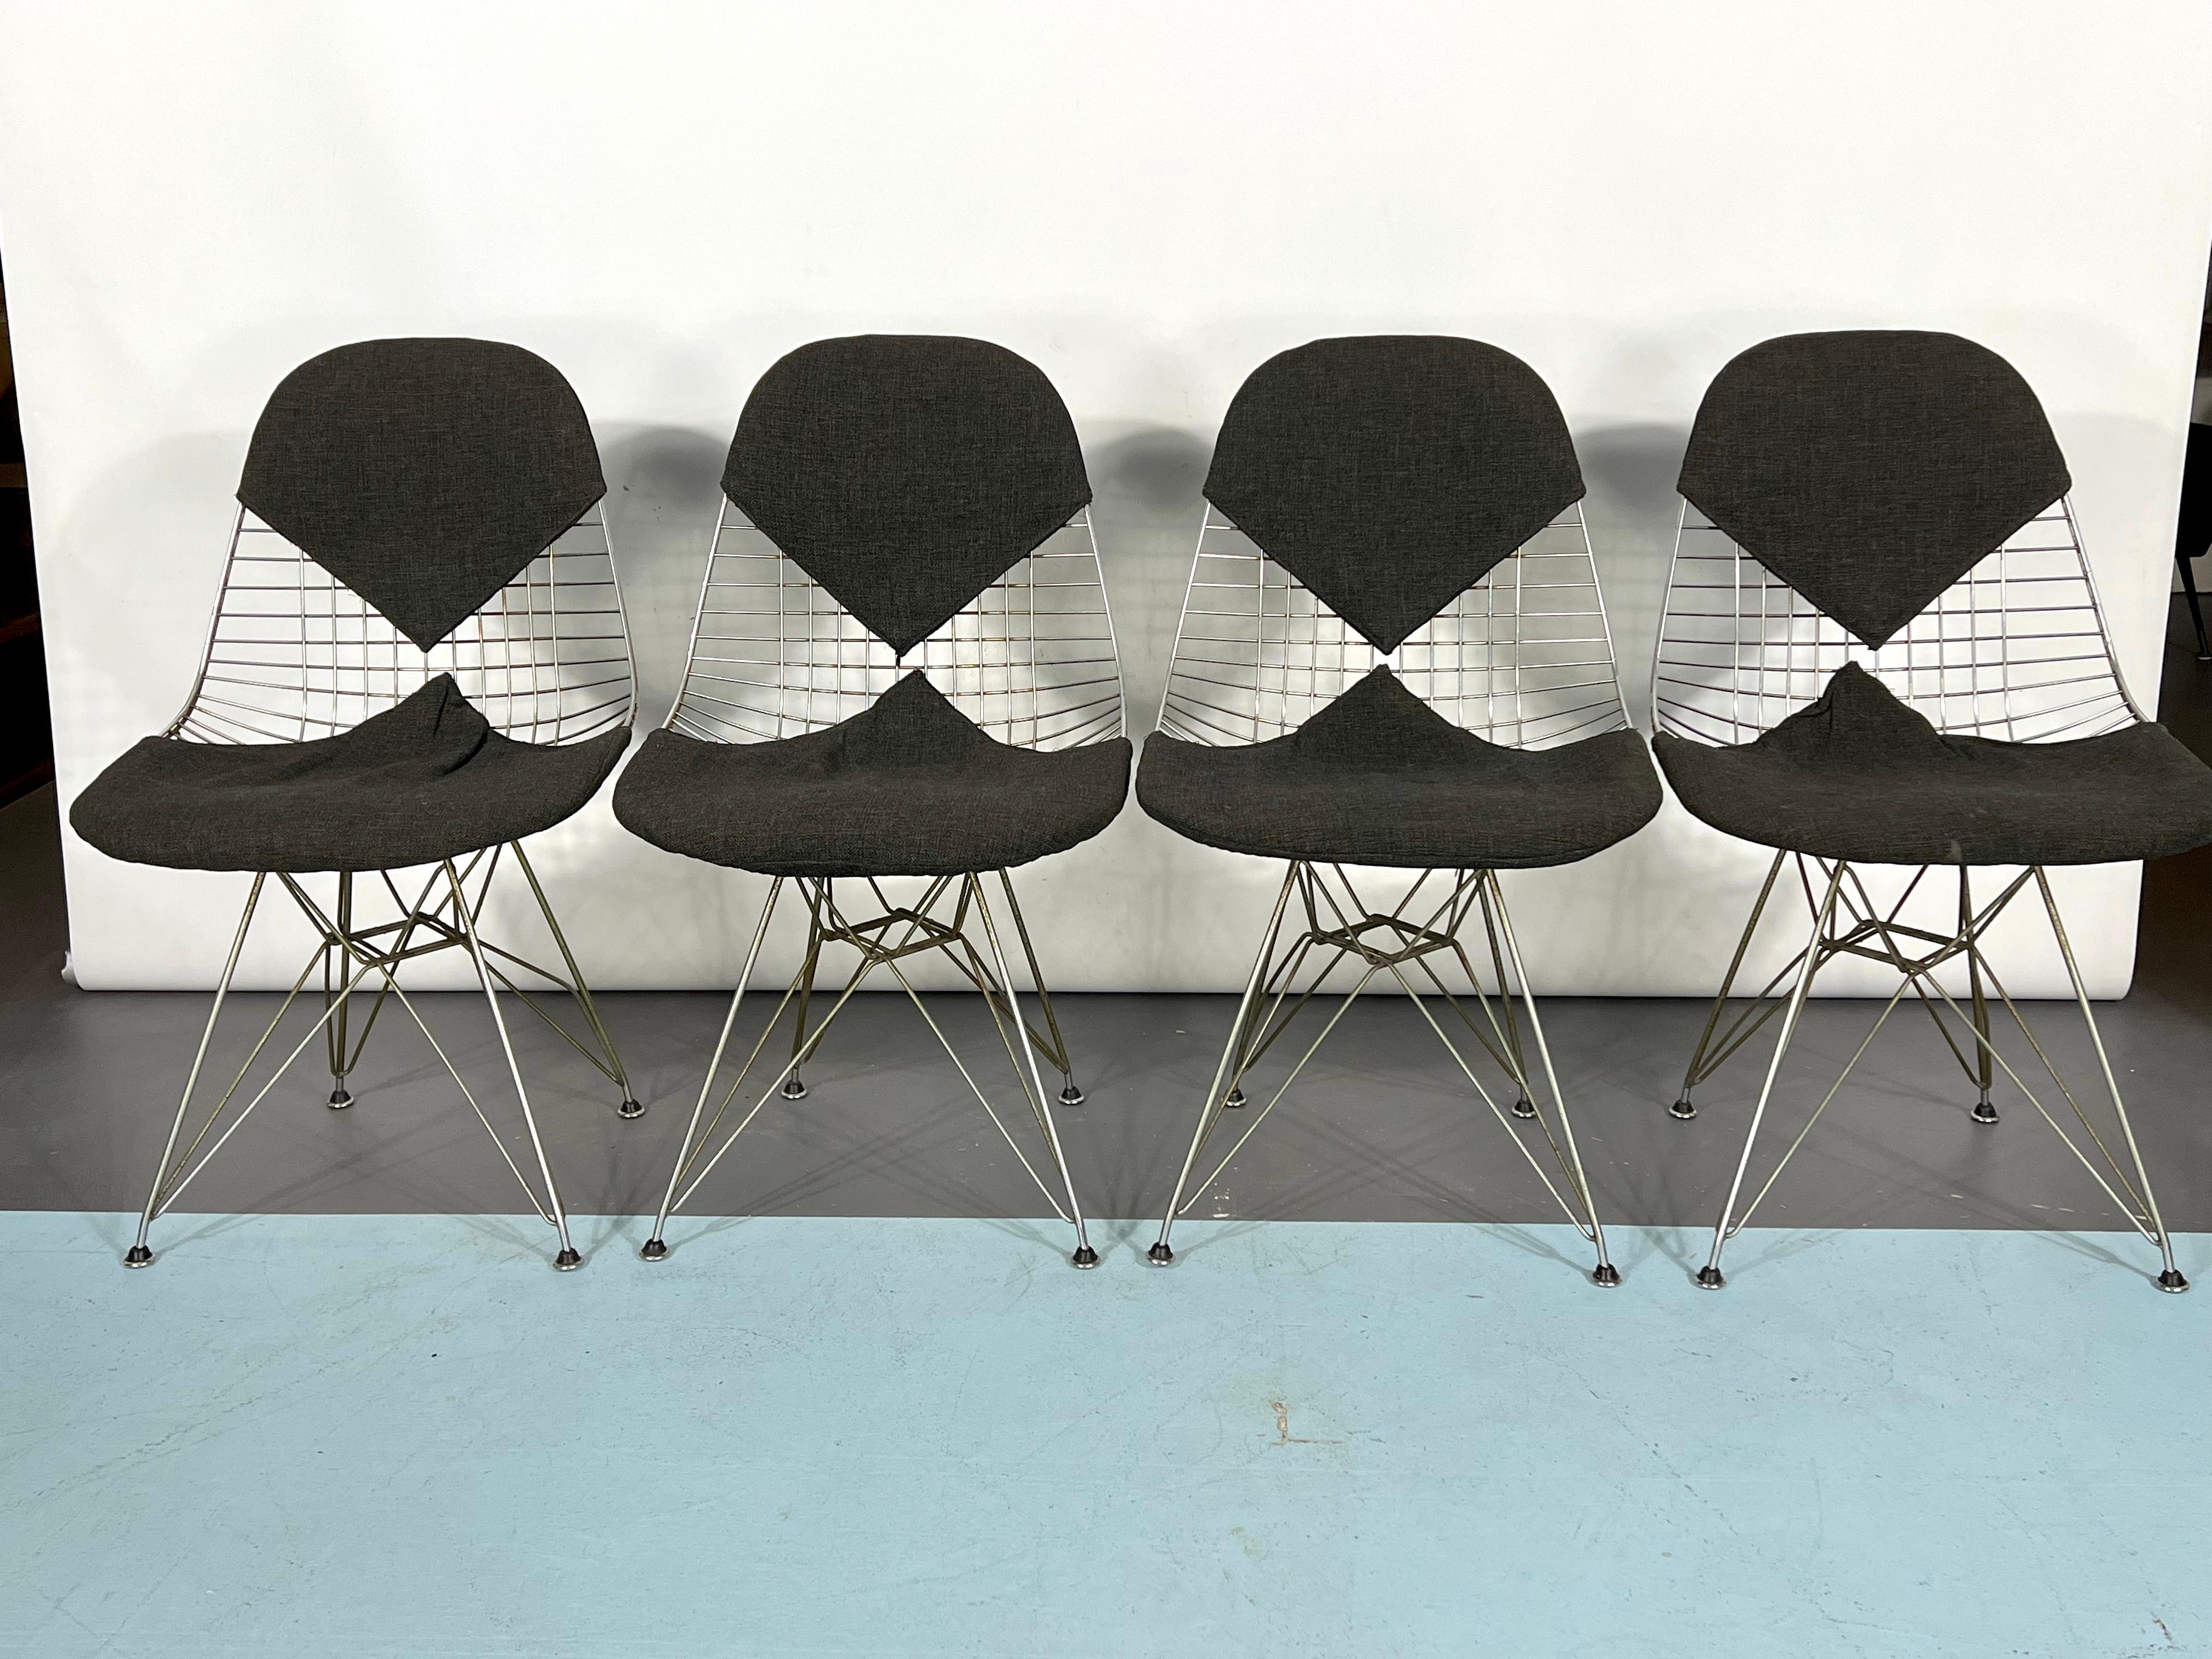 Bon état vintage avec traces d'âge et d'utilisation pour cet ensemble de quatre chaises By Vintage conçues par Charles et Ray Eames pour Herman Miller. Quelques points de rouille sur le métal. Original des années 60.